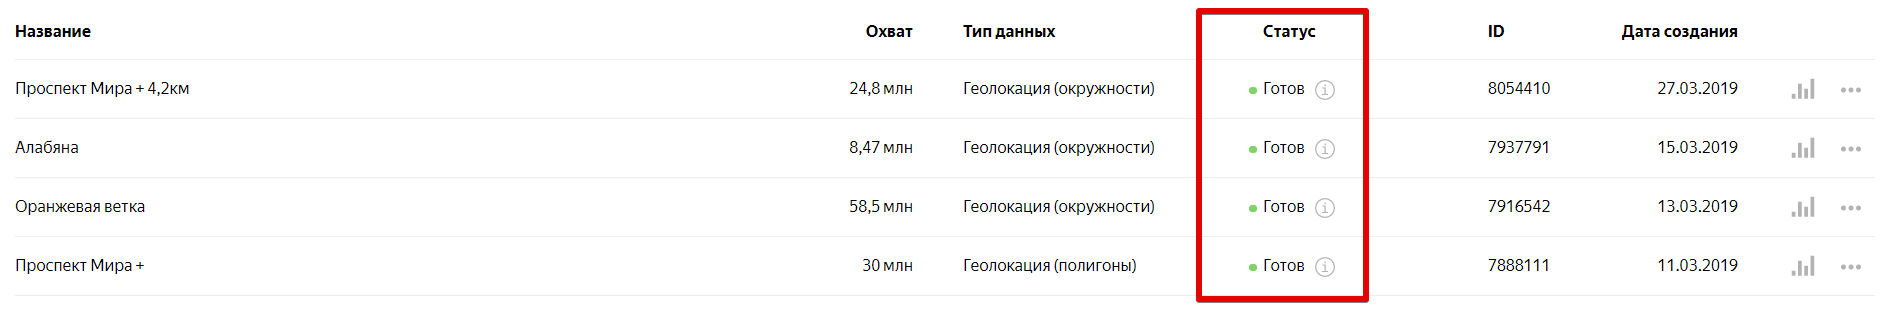 Сегменты в Яндекс.Аудиториях